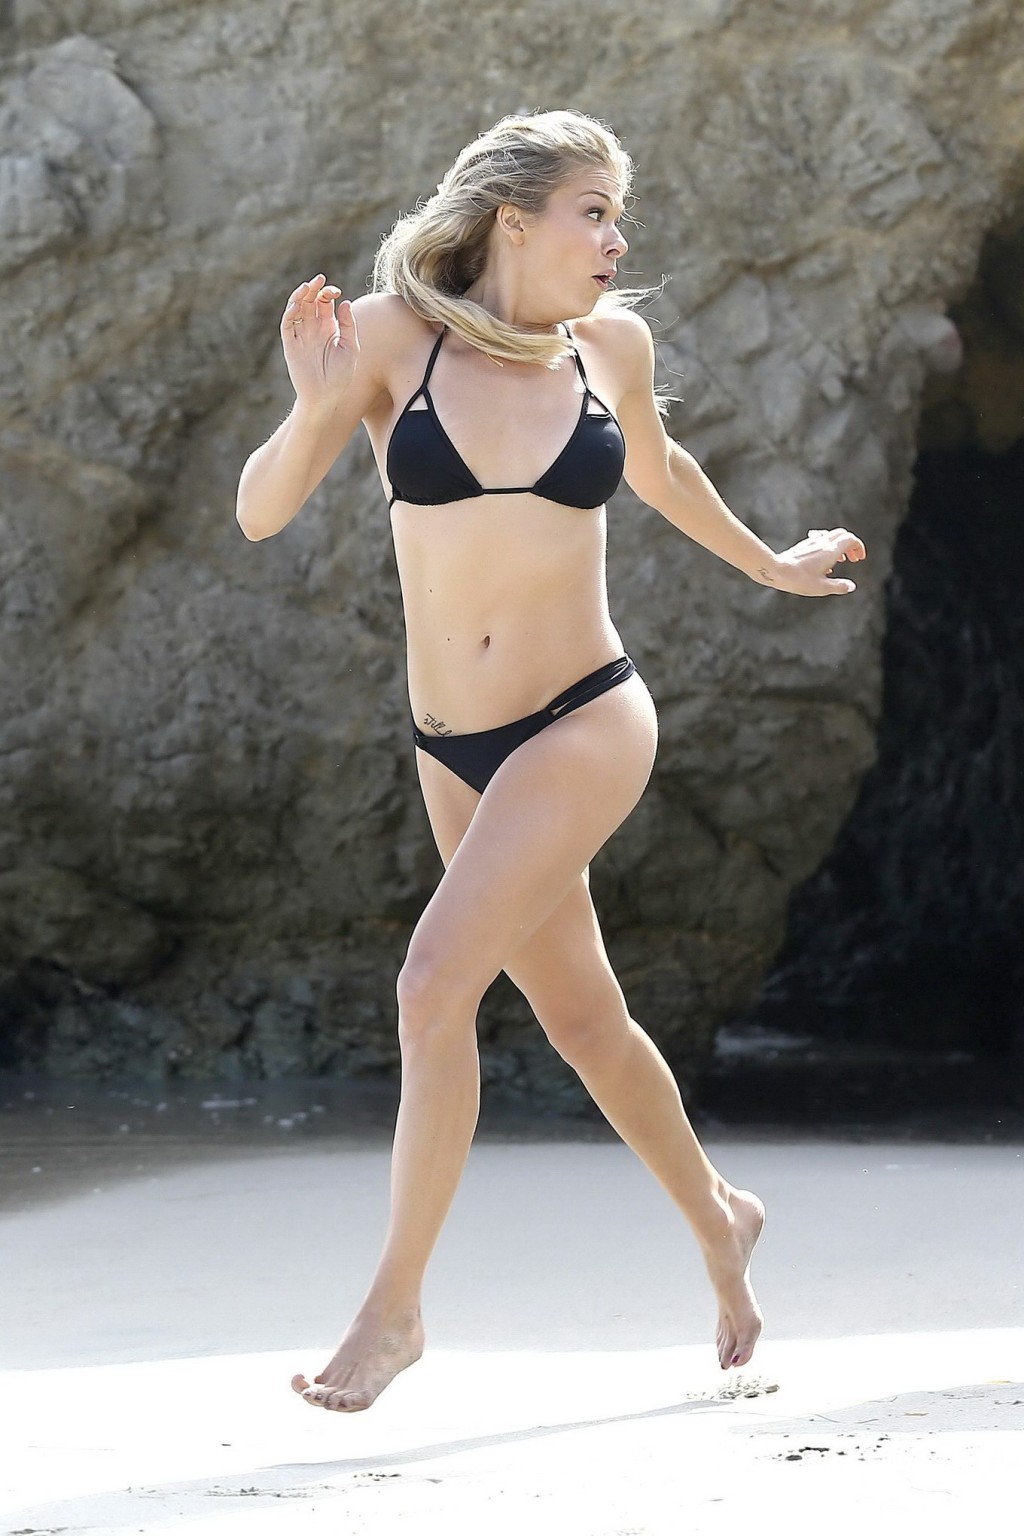 Leann rimes indossa il bikini nero al photoshoot in spiaggia di Malibu
 #75192669